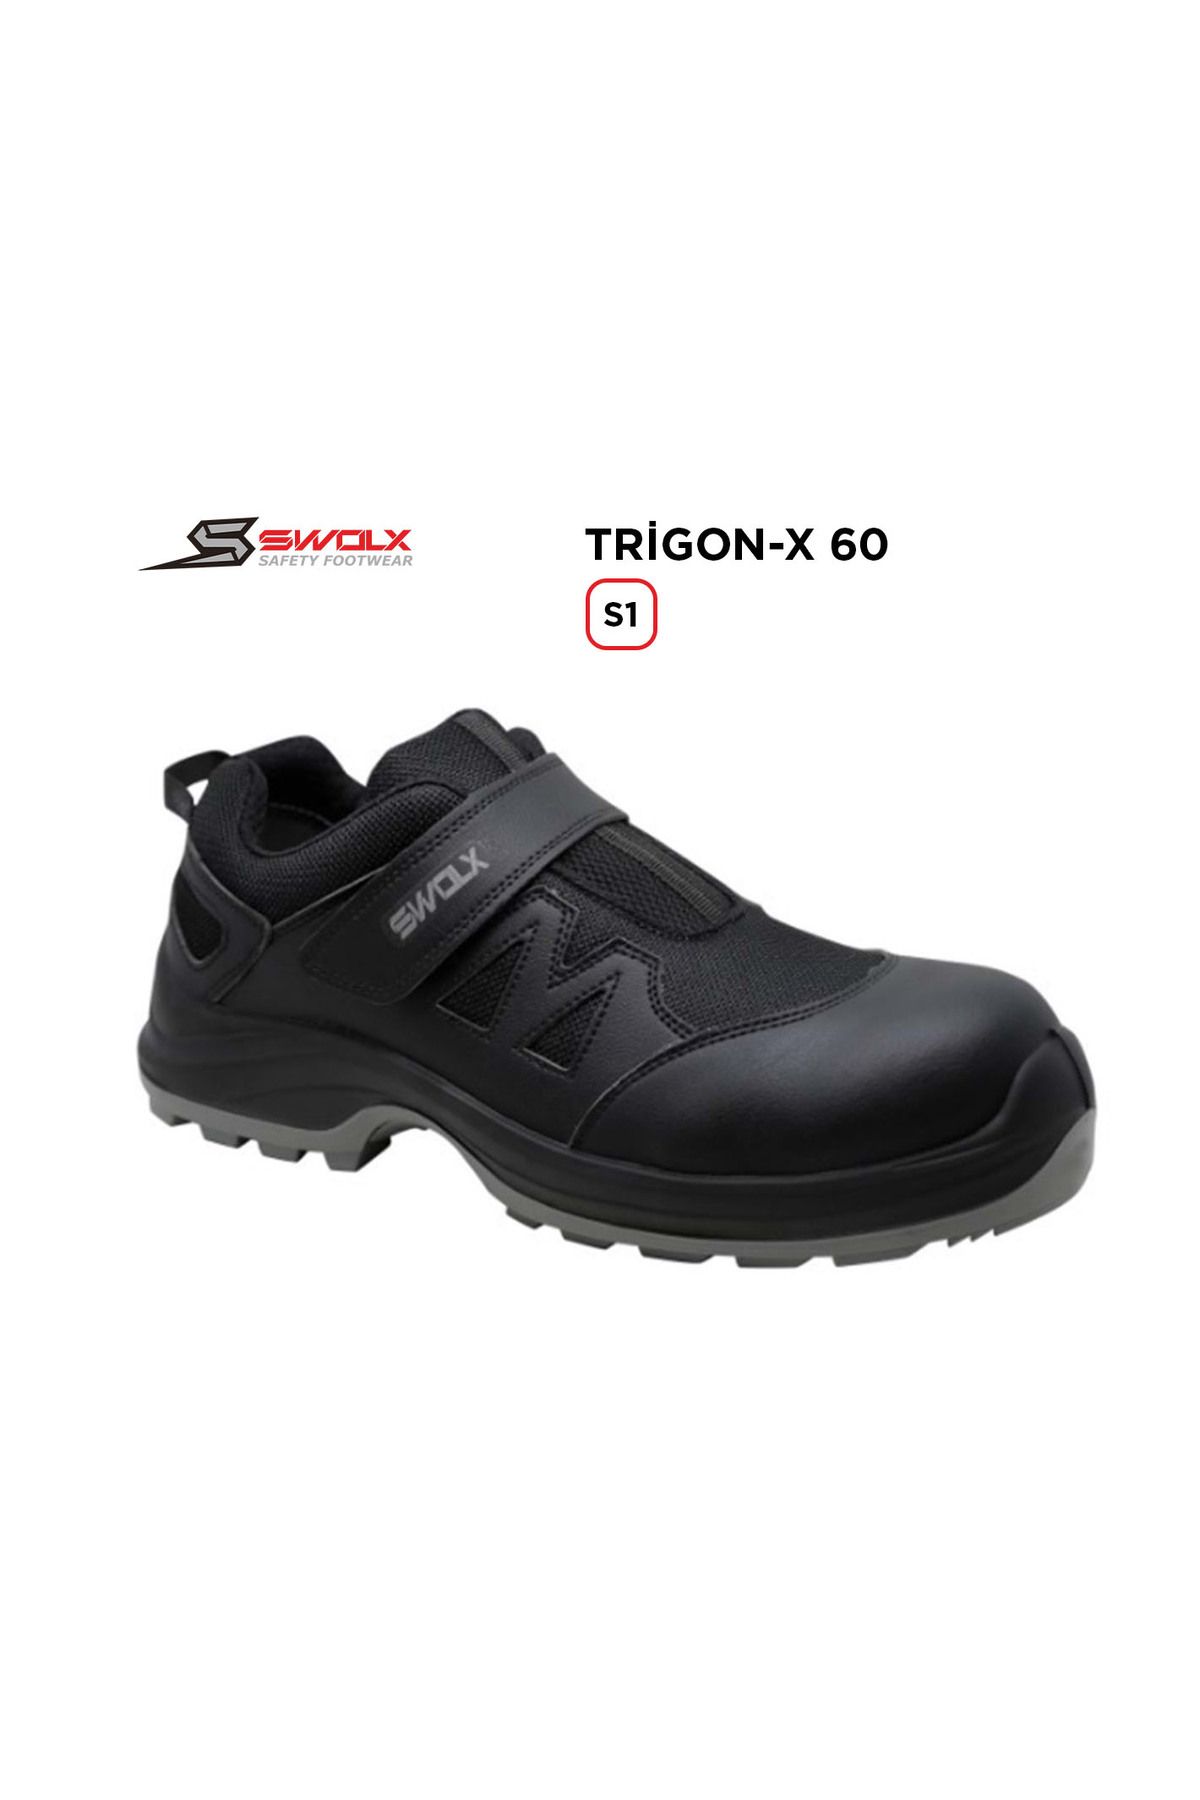 Swolx Iş Ayakkabısı - Trigon-x 60 S1